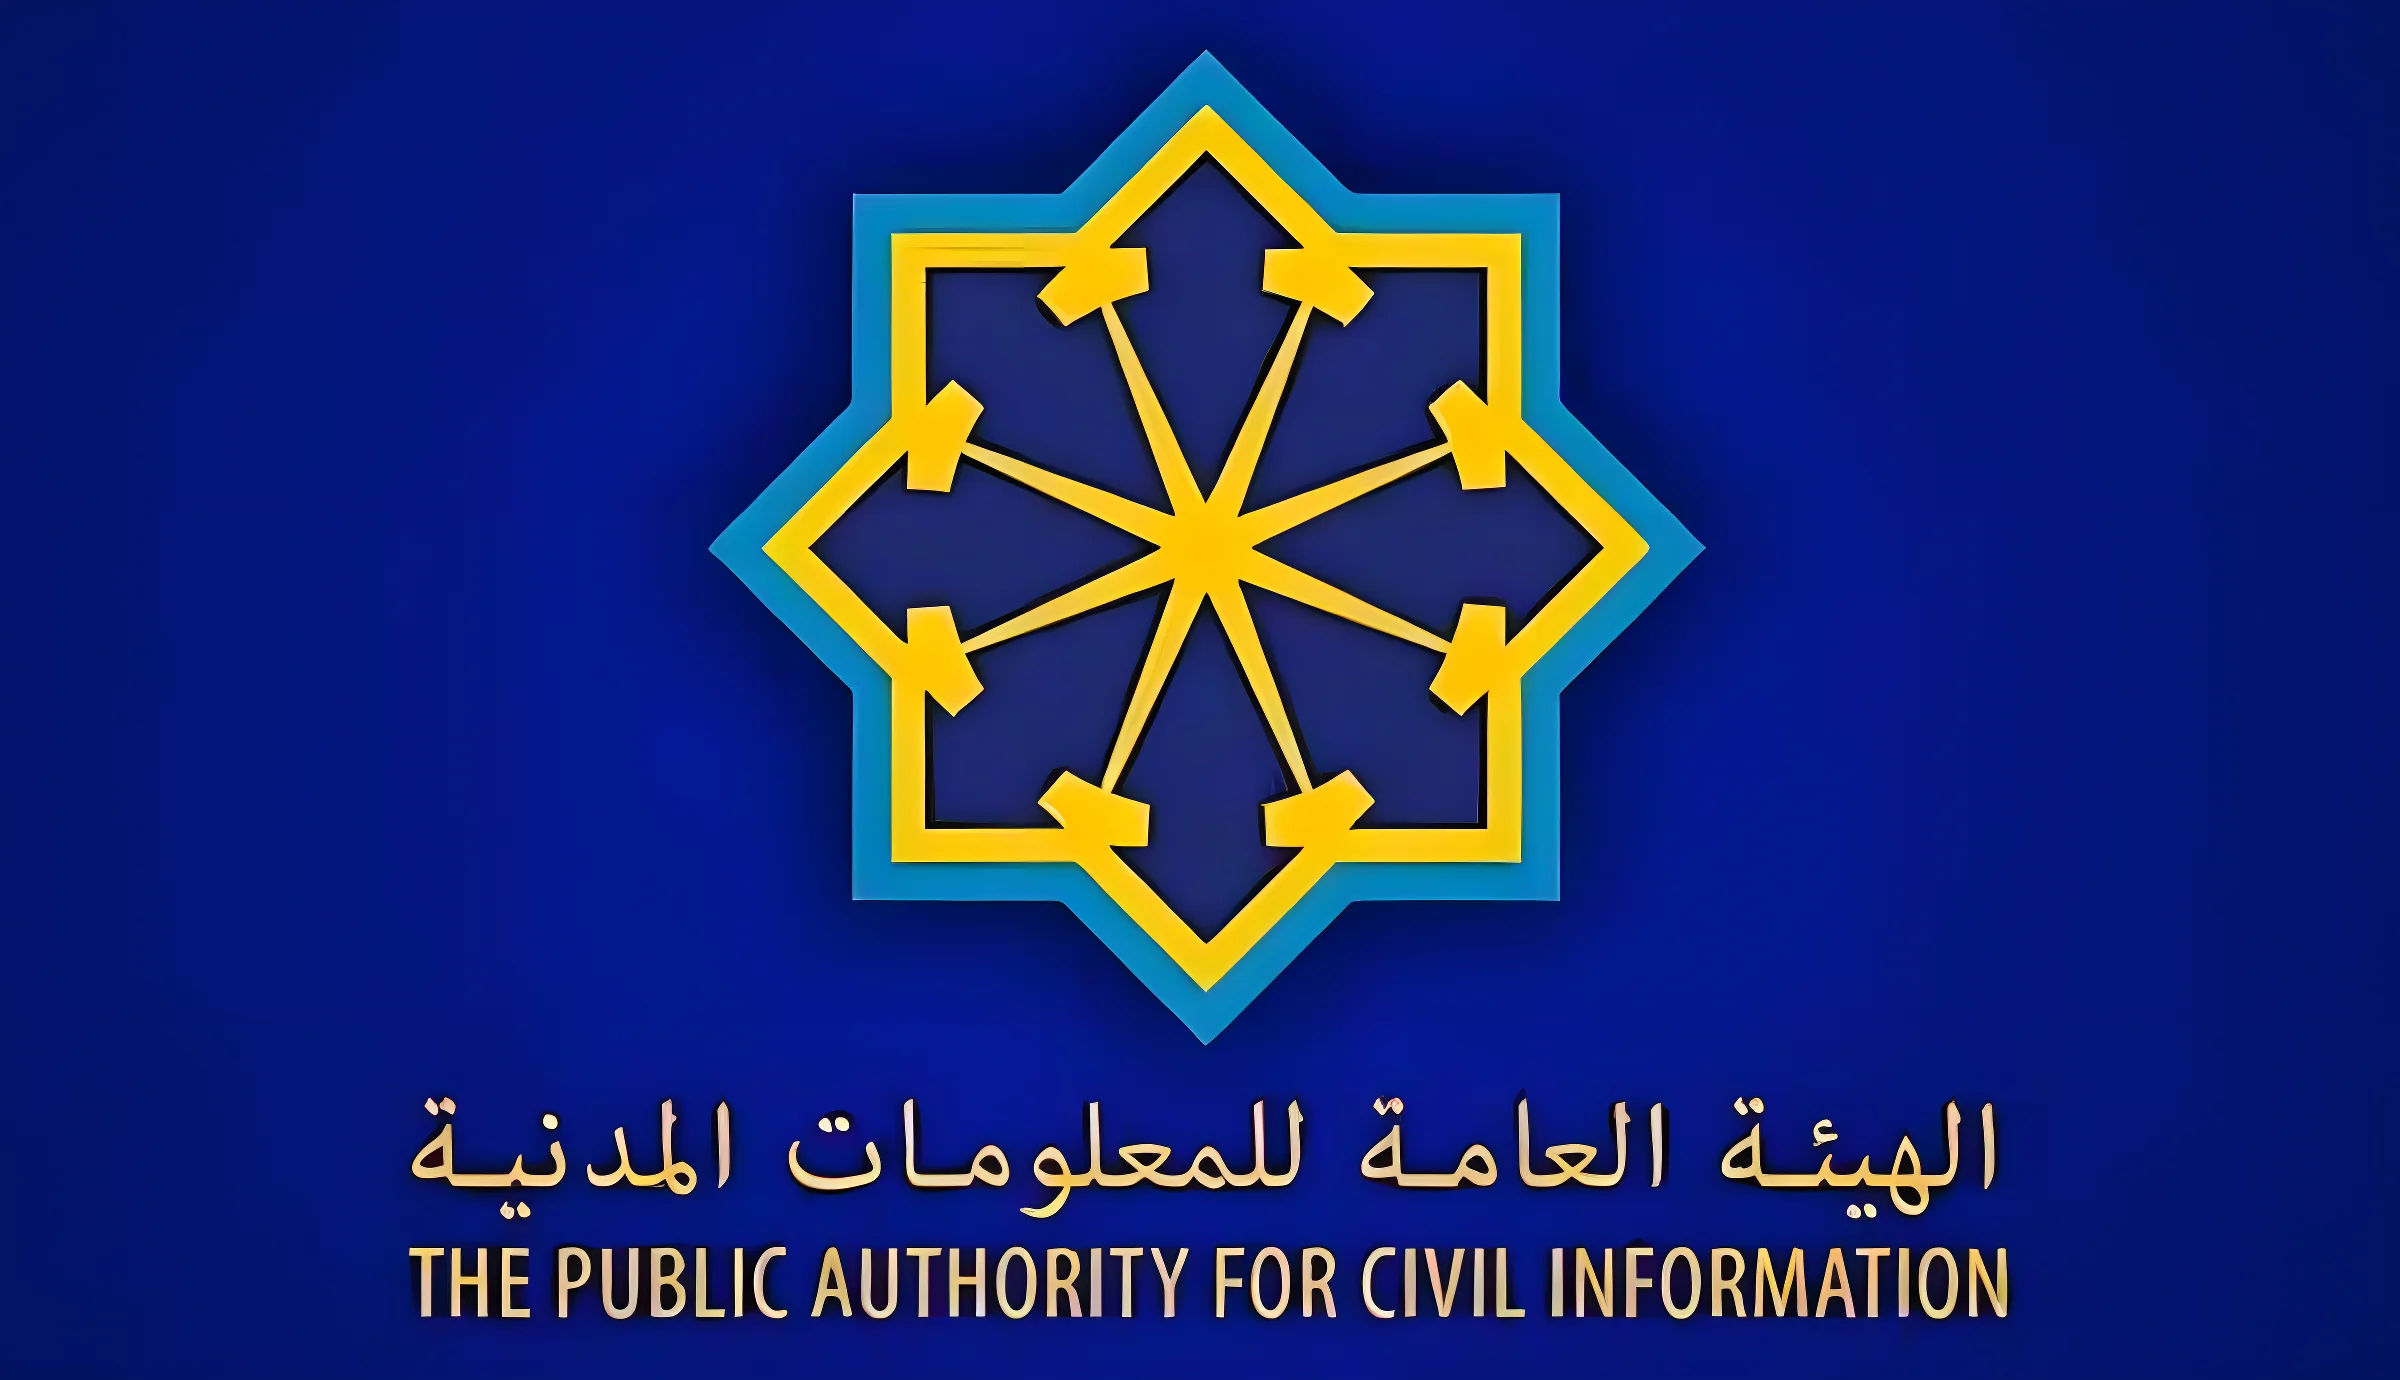 تجديد البطاقة المدنية الكويت دليل شامل لتحديث بيانات هويتك الكويتية